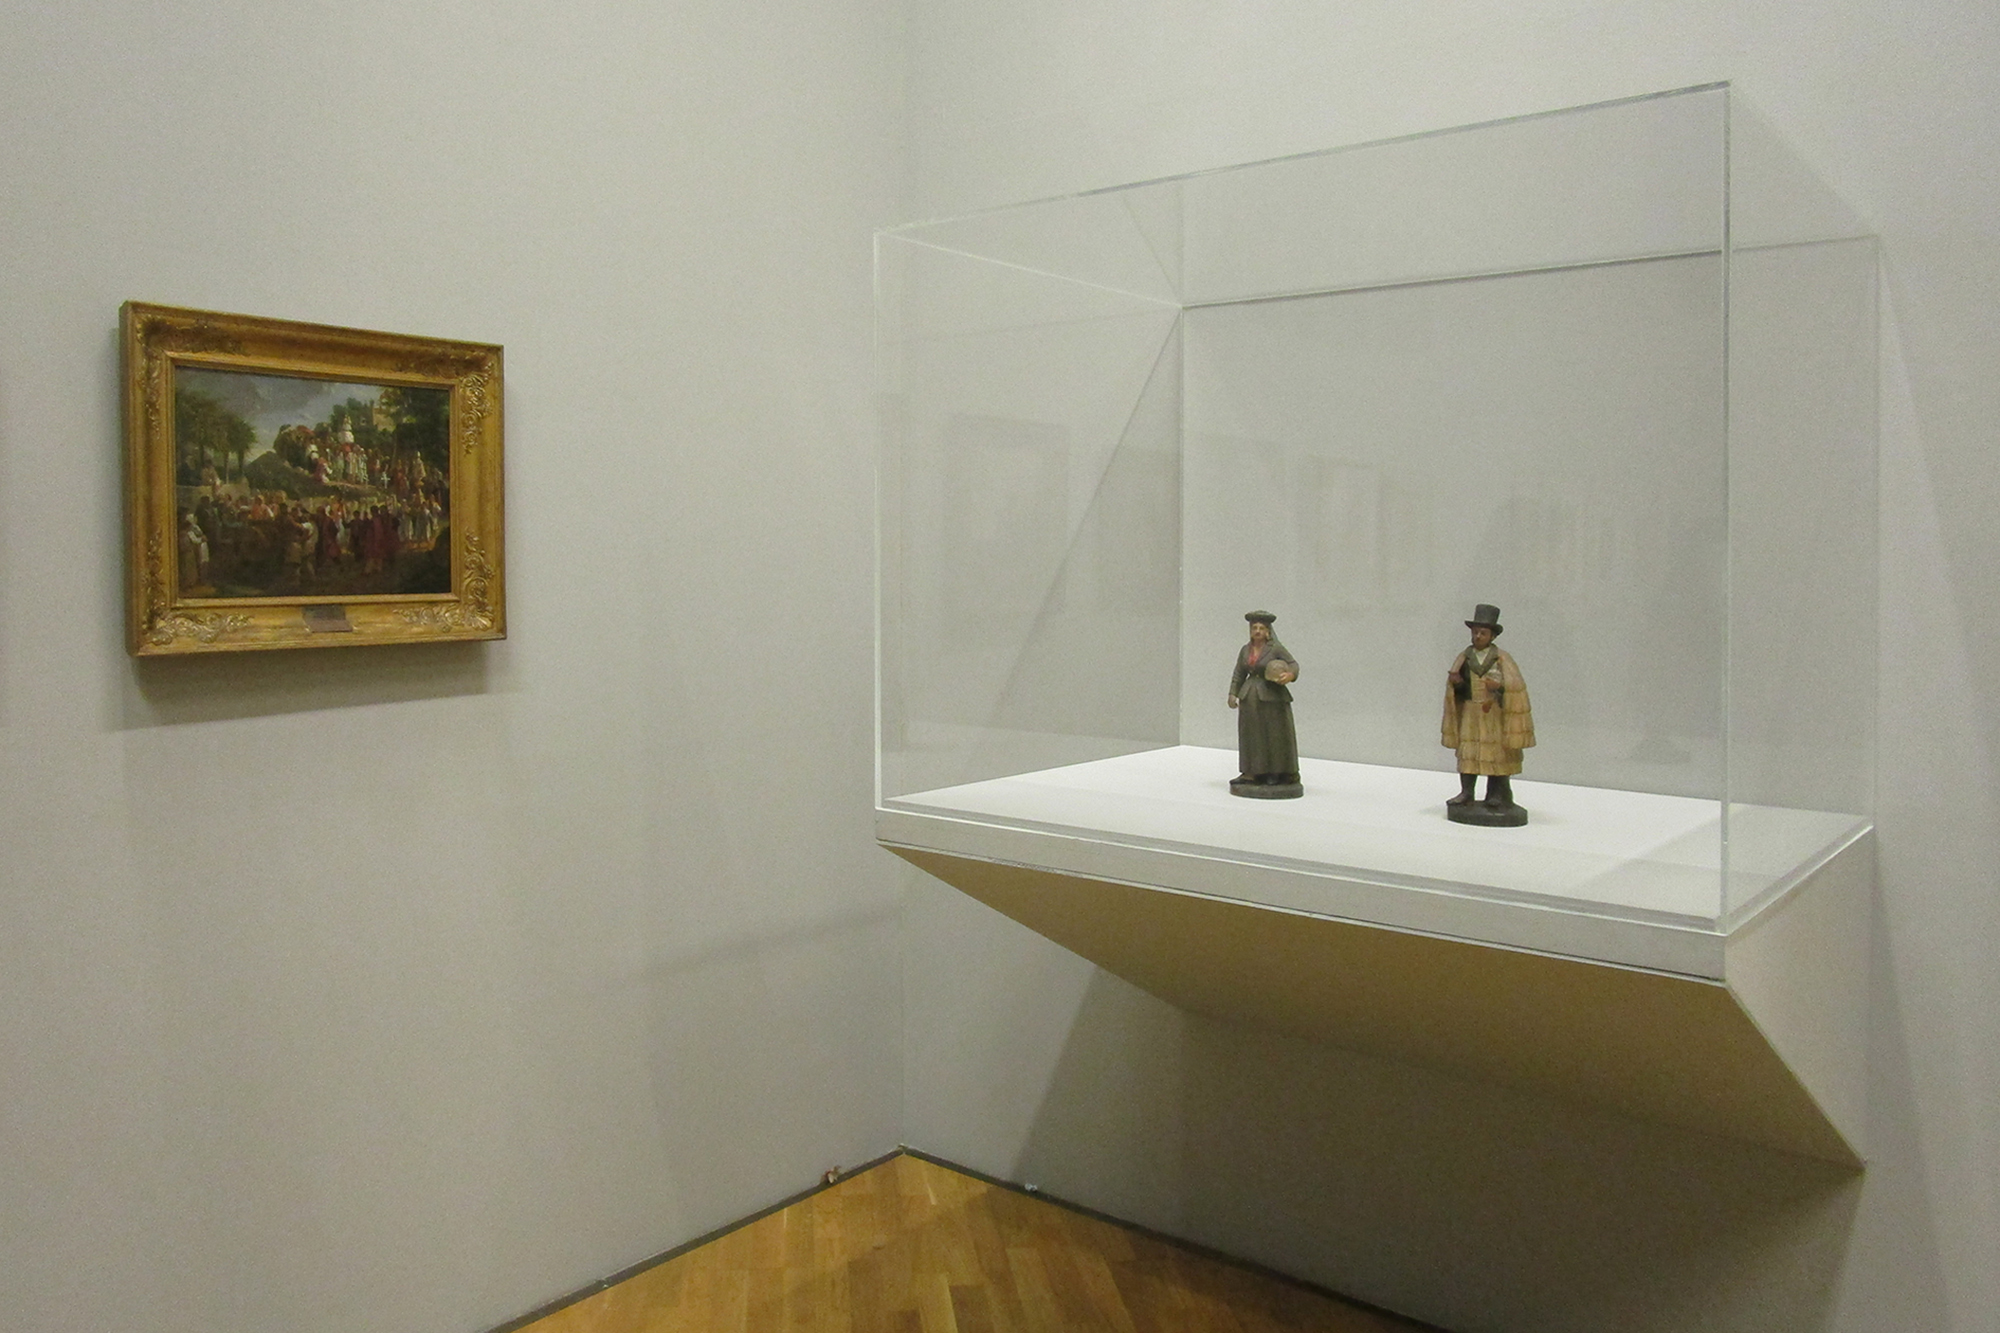 Coleções Em Diálogo: Museu Nacional de Soares dos Reis e Pinacoteca de São Paulo